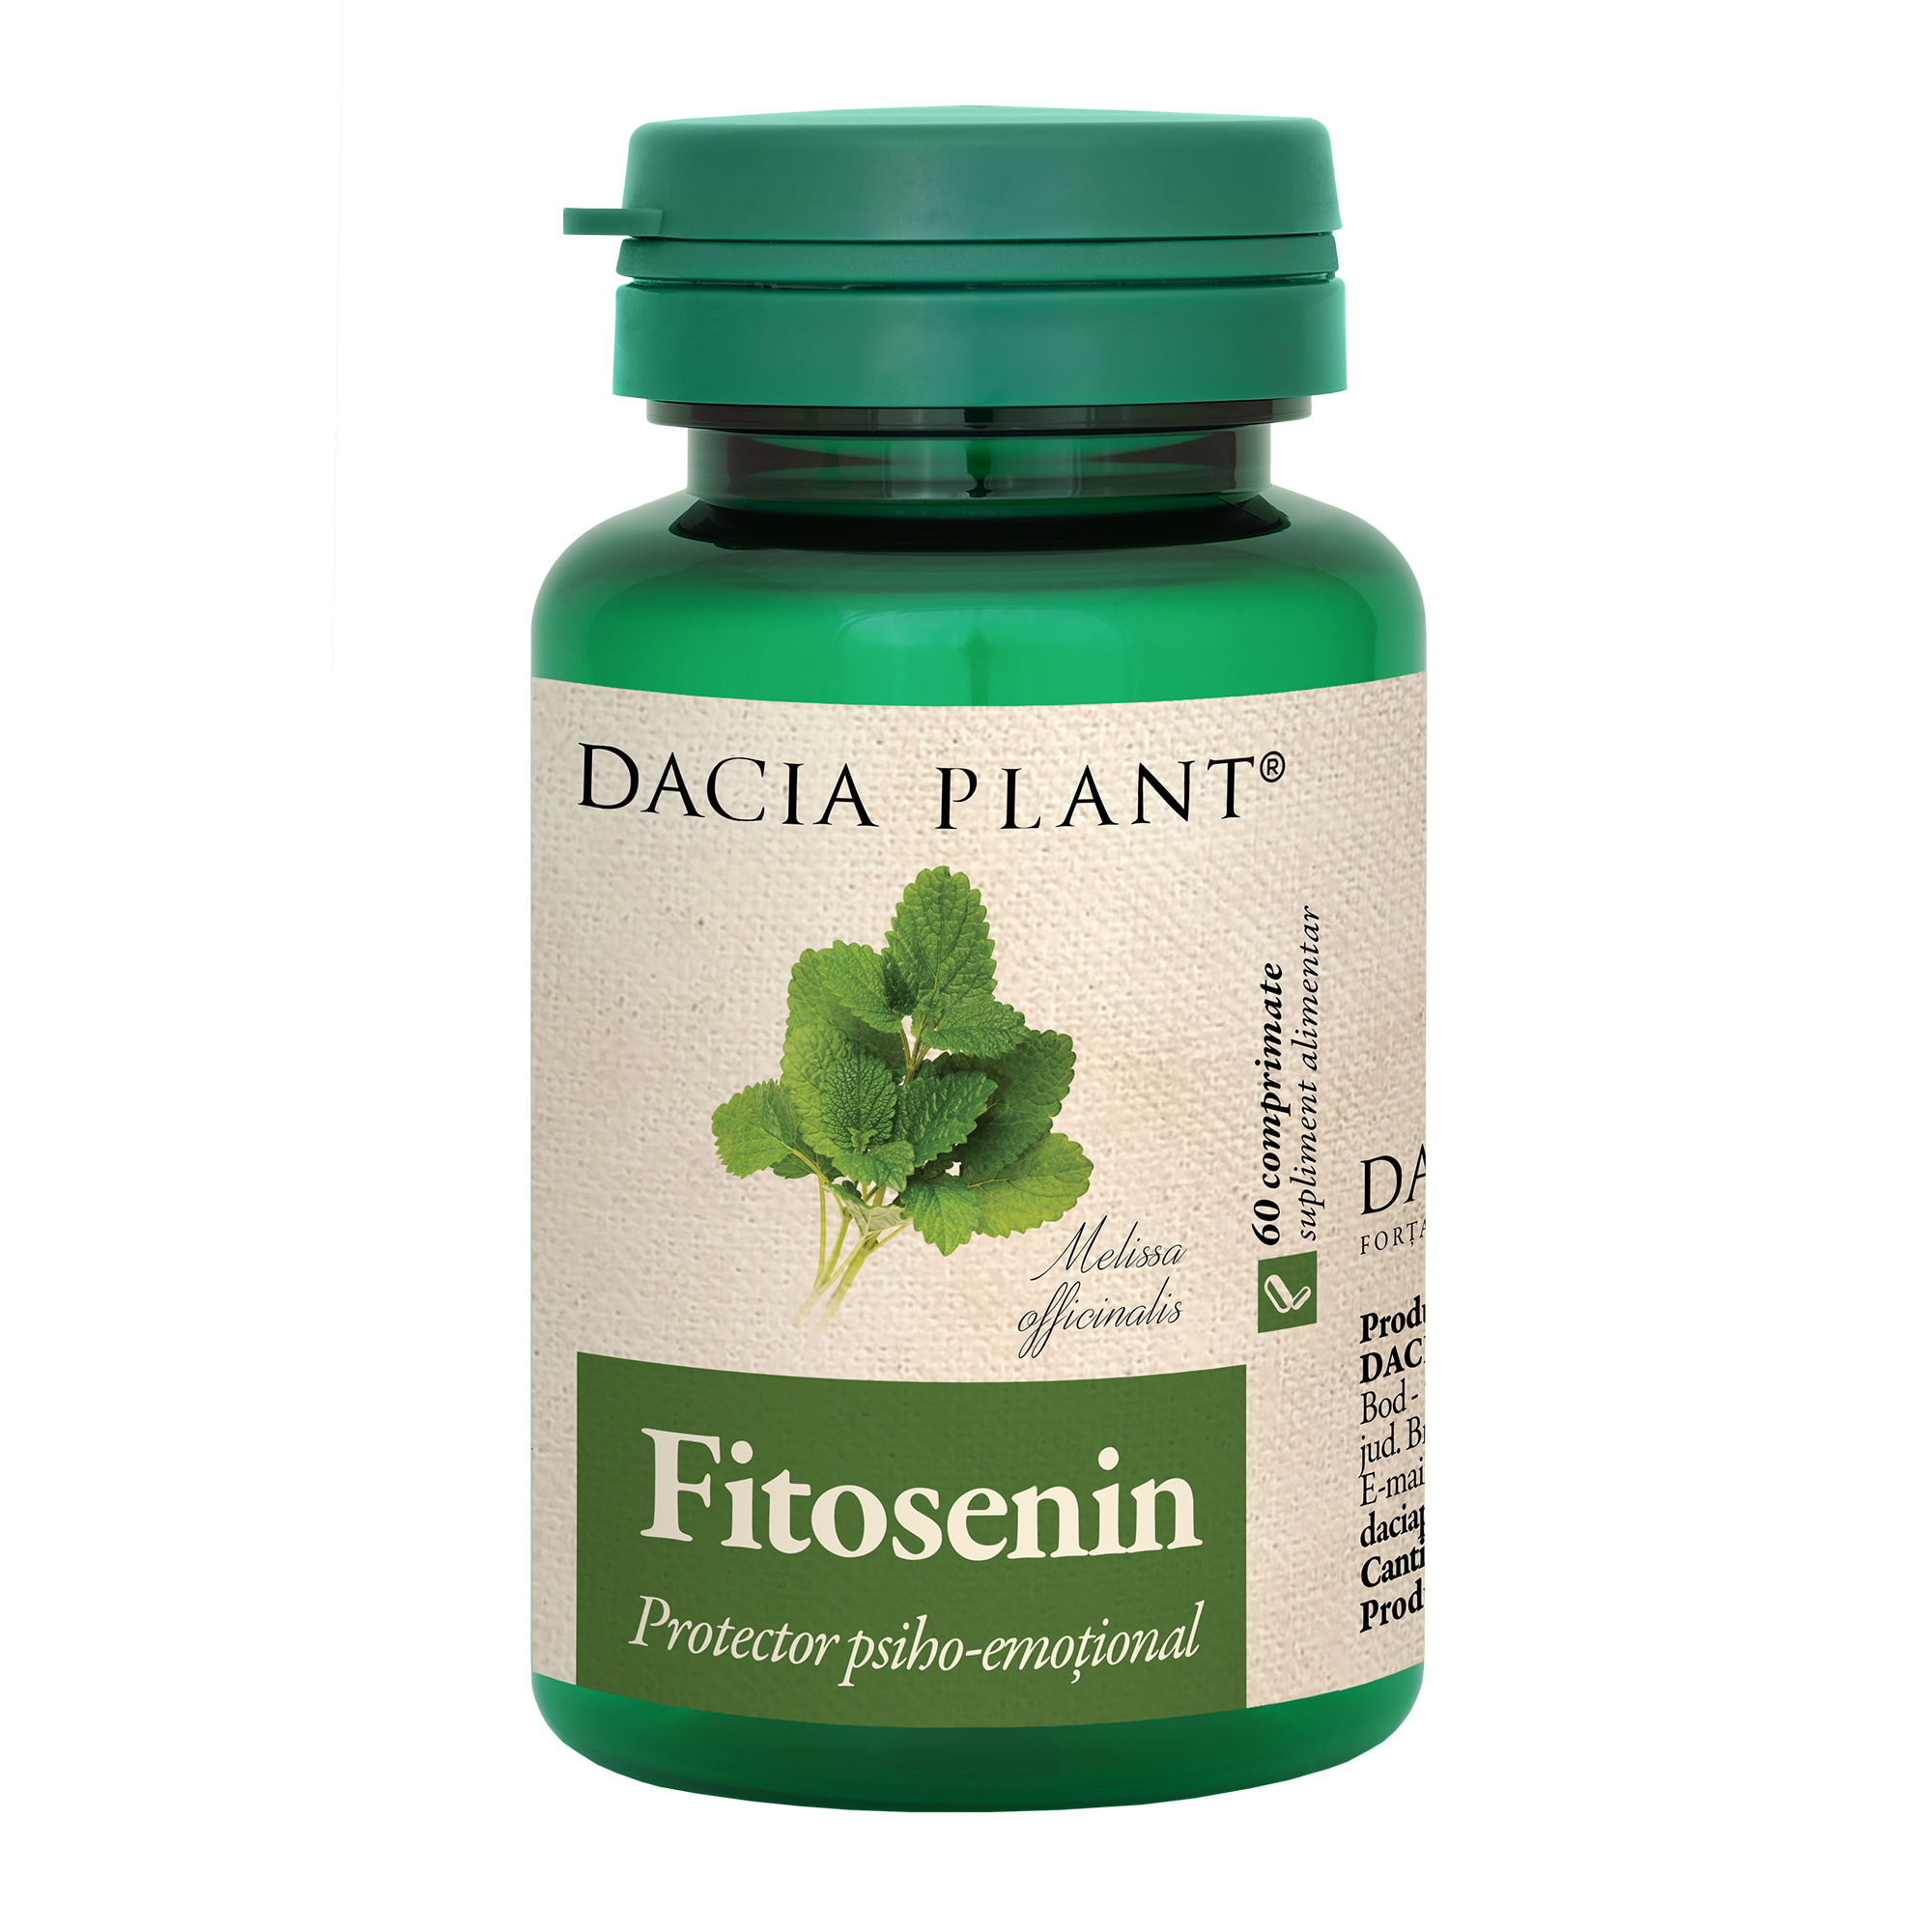 Fitosenin comprimate Dacia Plant